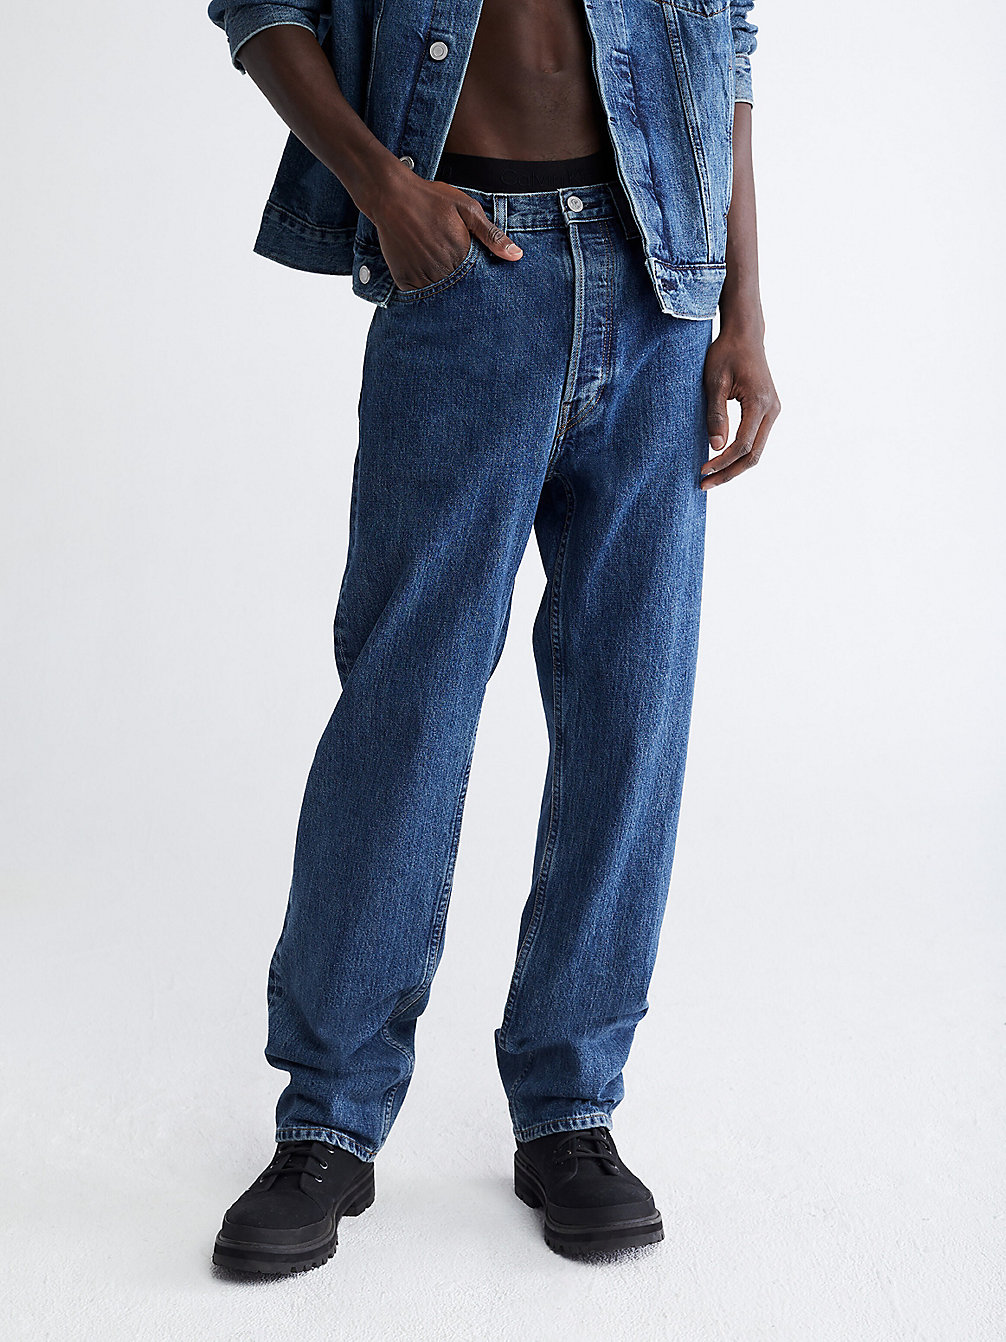 Unisex Straight Jeans > HARBOR BLUE > undefined unisex > Calvin Klein